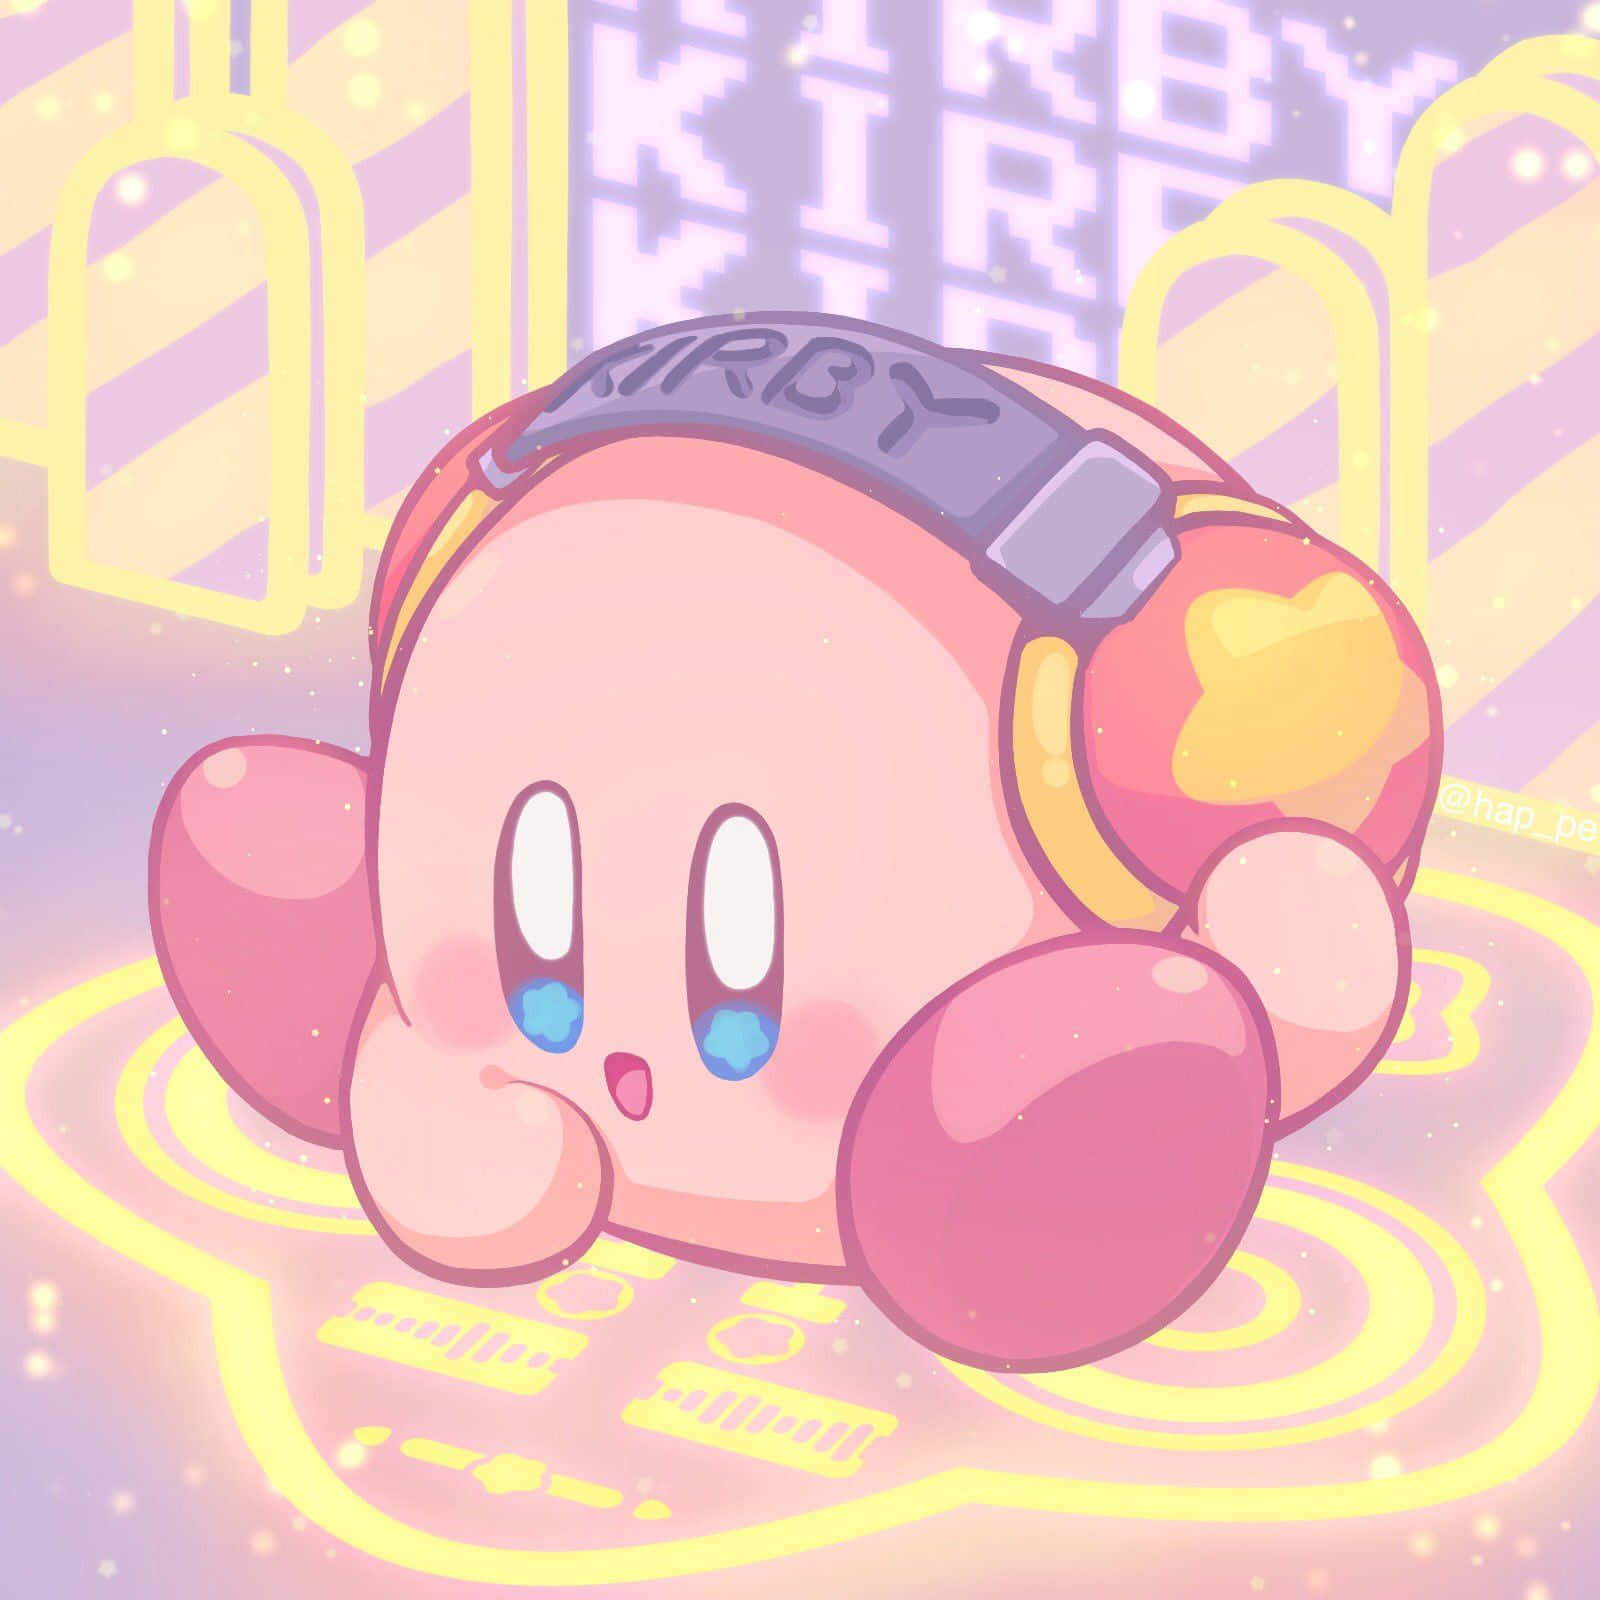 Habensie Eine Lustige Zeit Mit Kirby, Dem Liebenswerten Rosa Wesen.